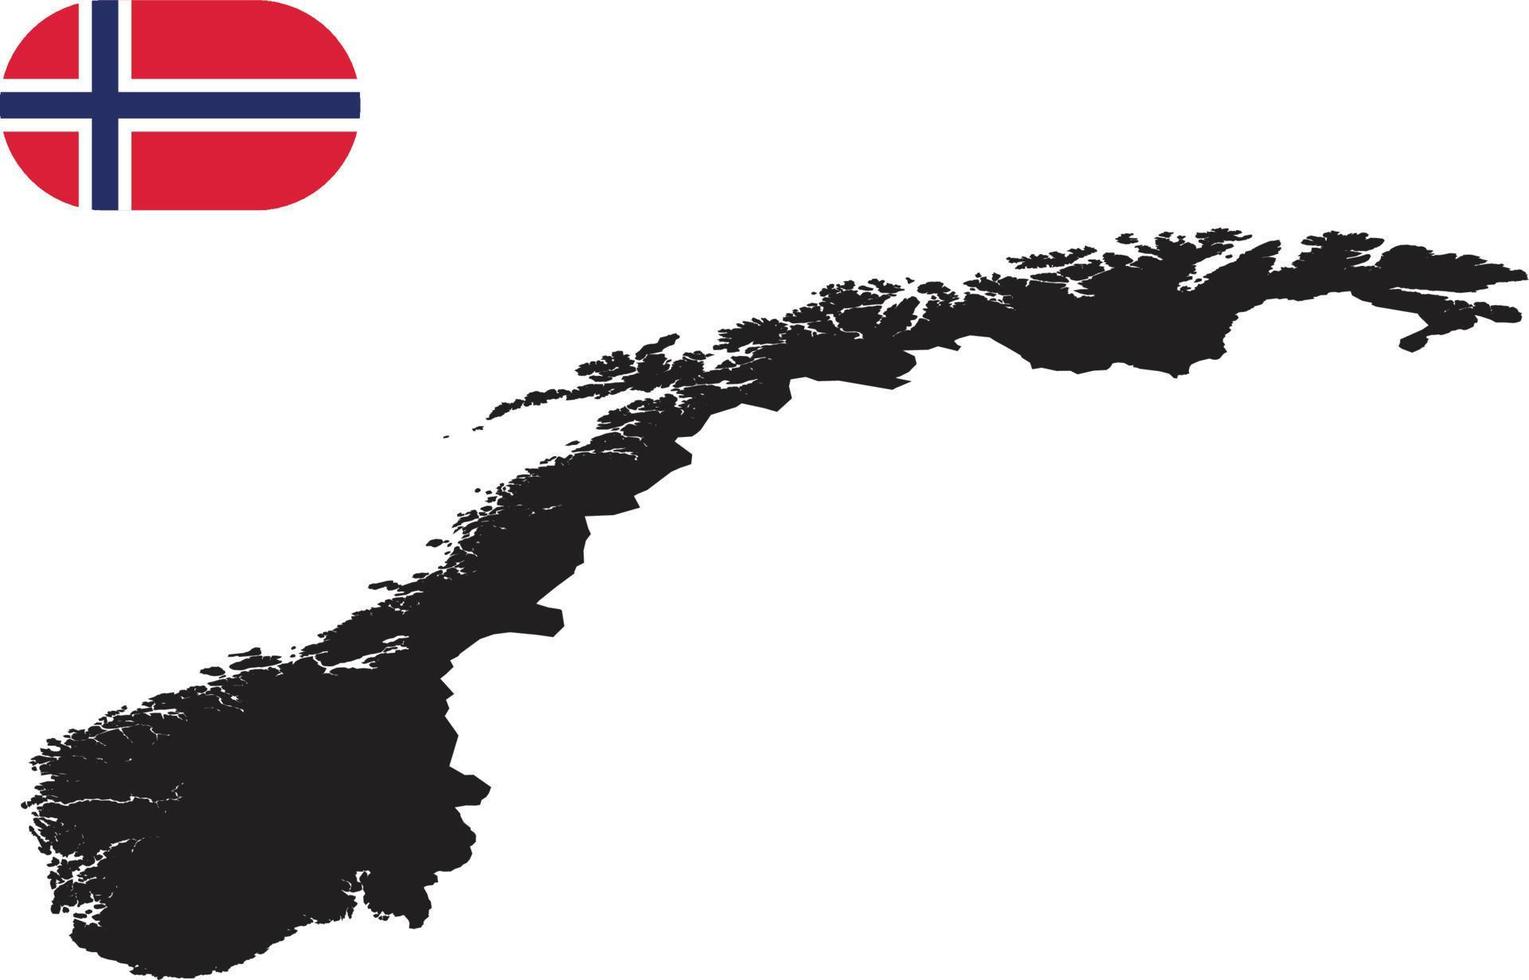 kaart en vlag van noorwegen vector